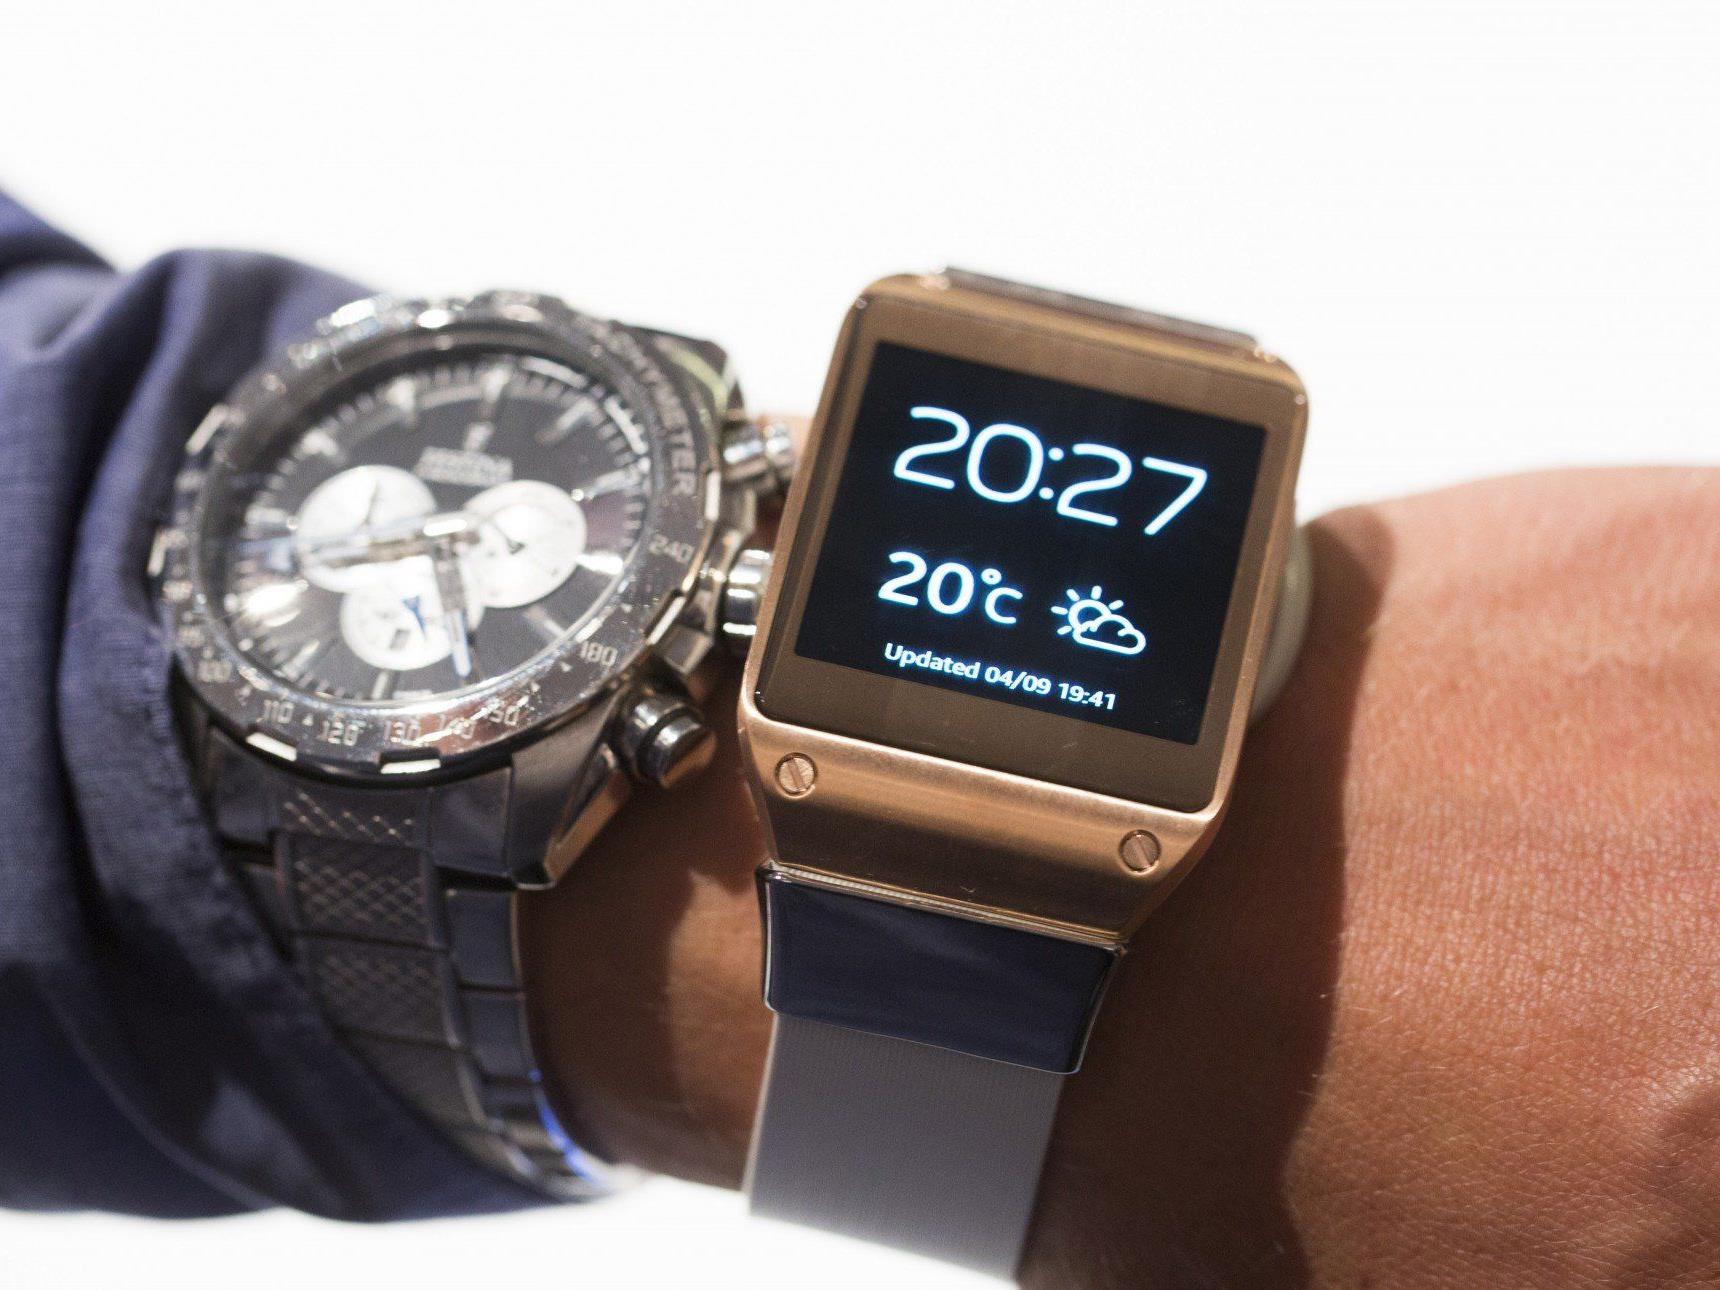 Elektronikriese Samsung präsentierte in Berlin seine erste Smartwatch, die Galaxy Gear.